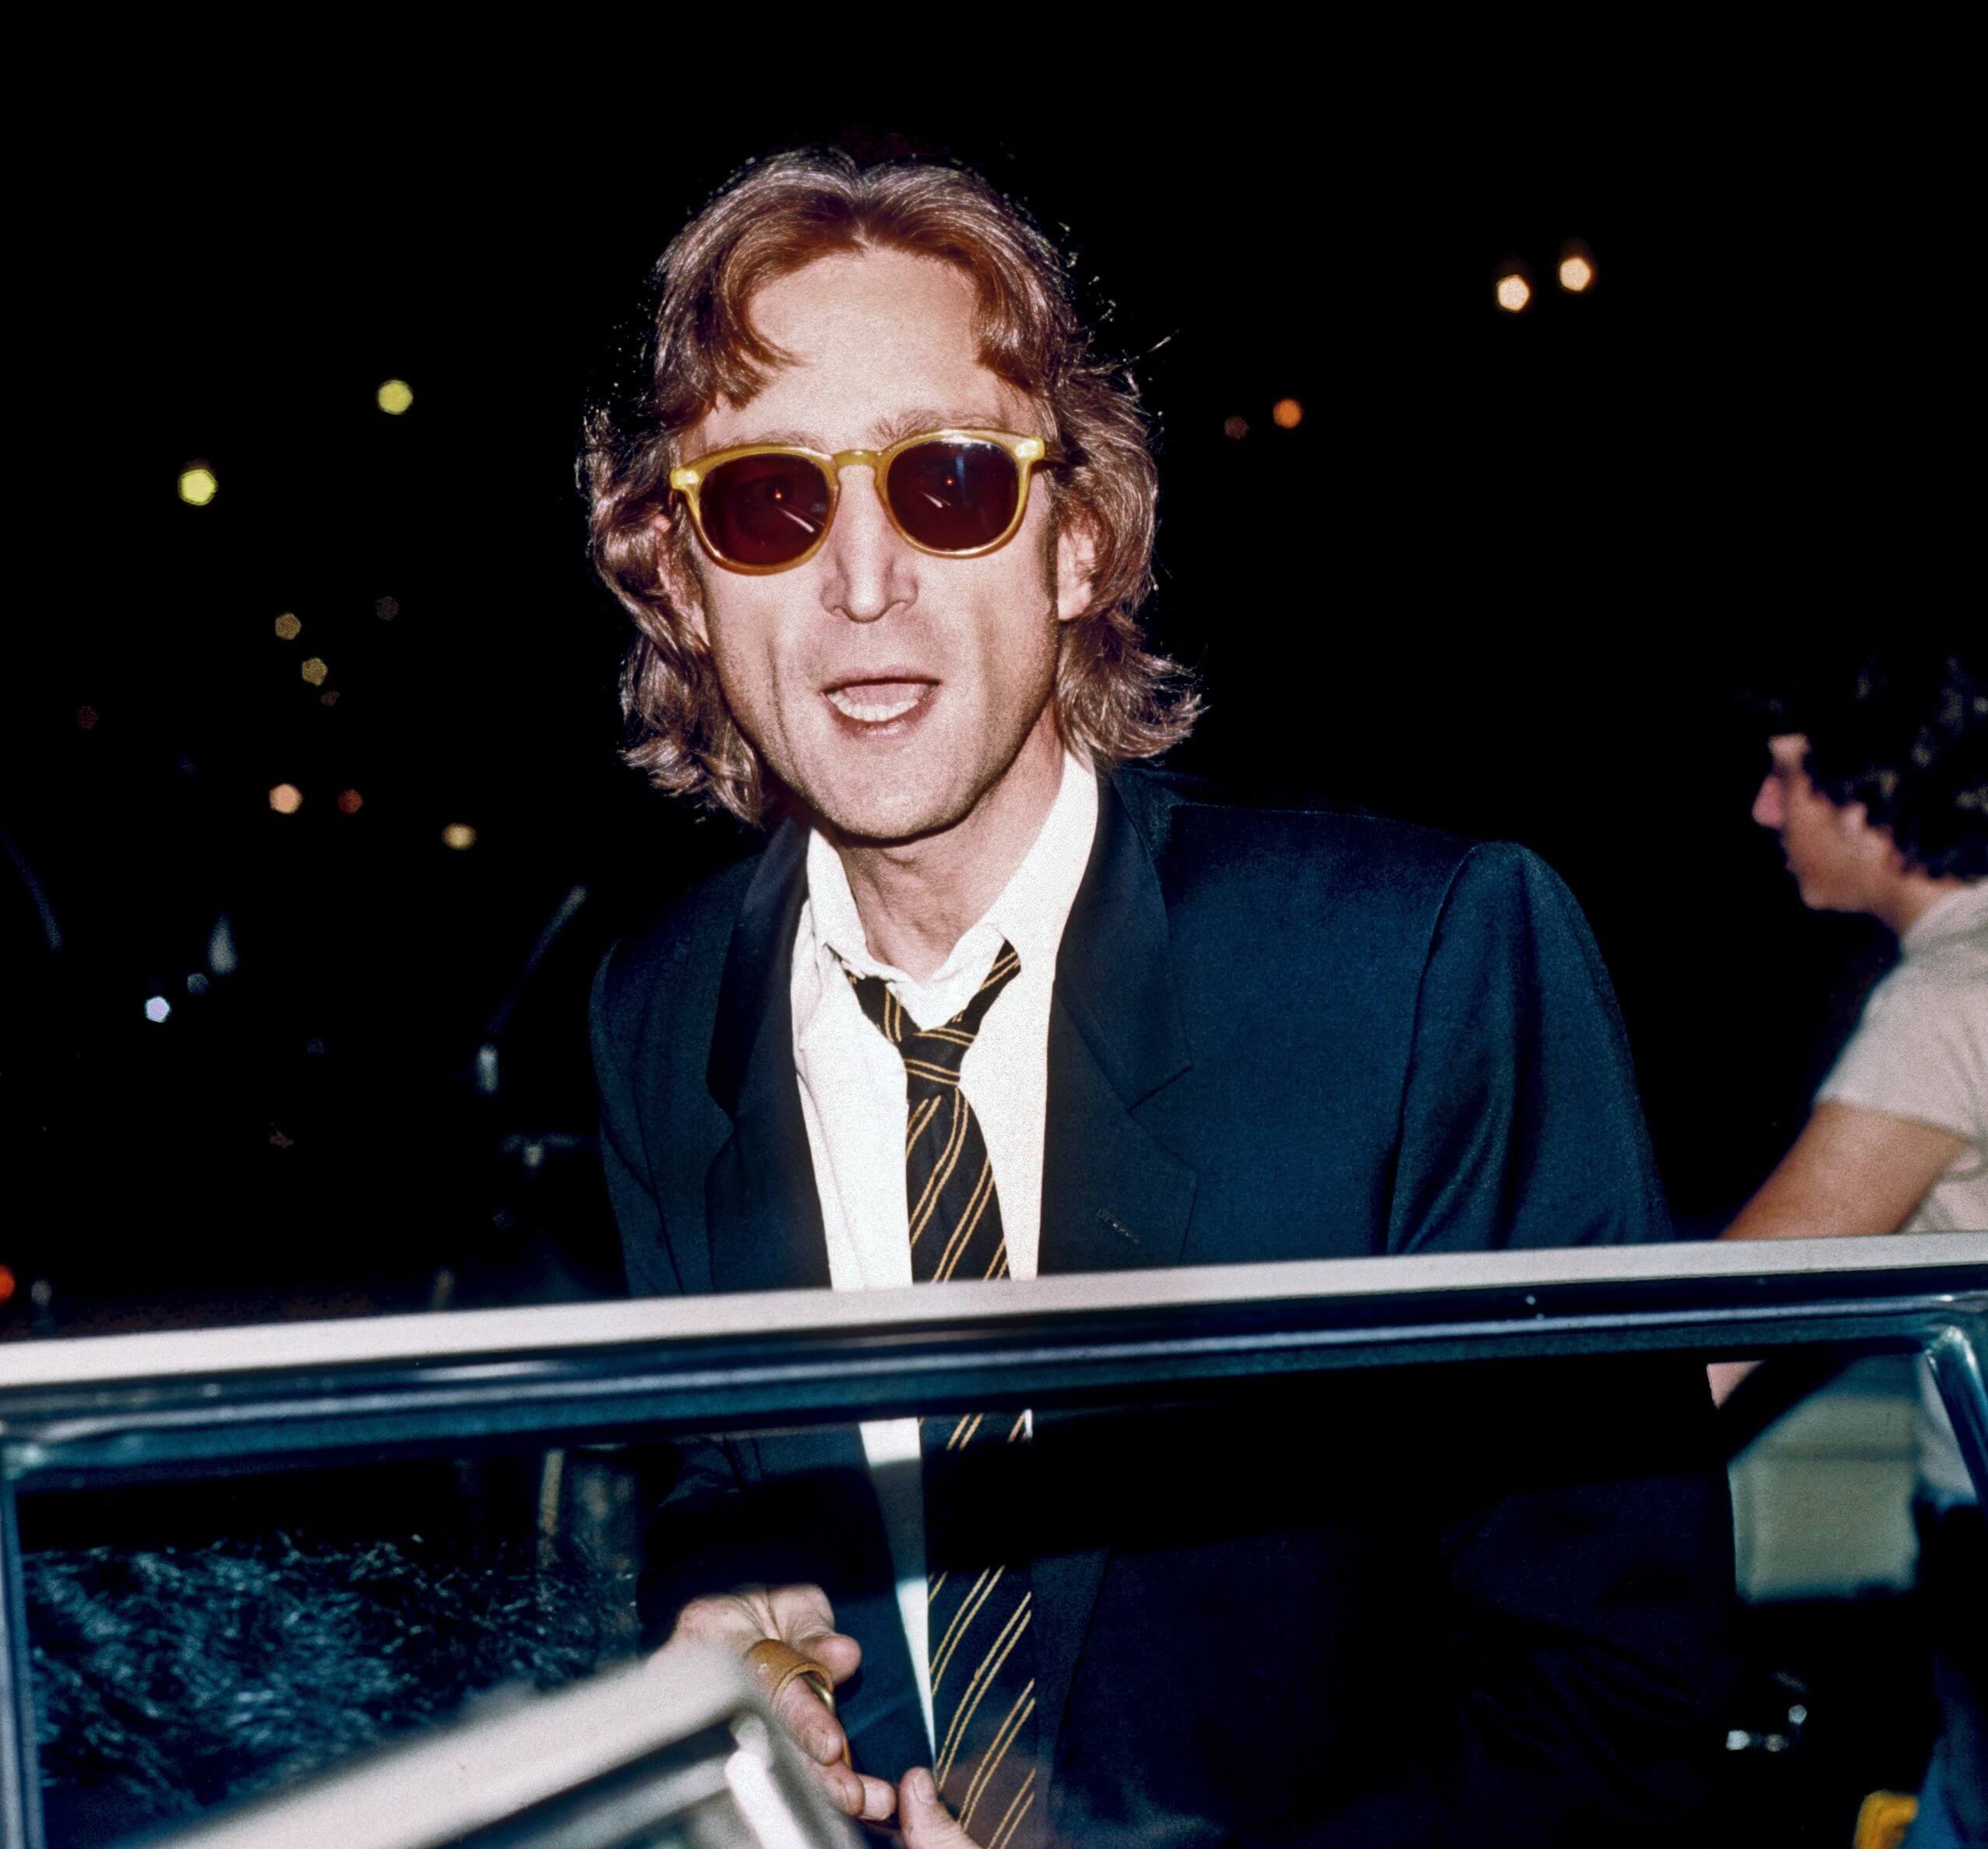 "Imagine" singer John Lennon wearing glasses